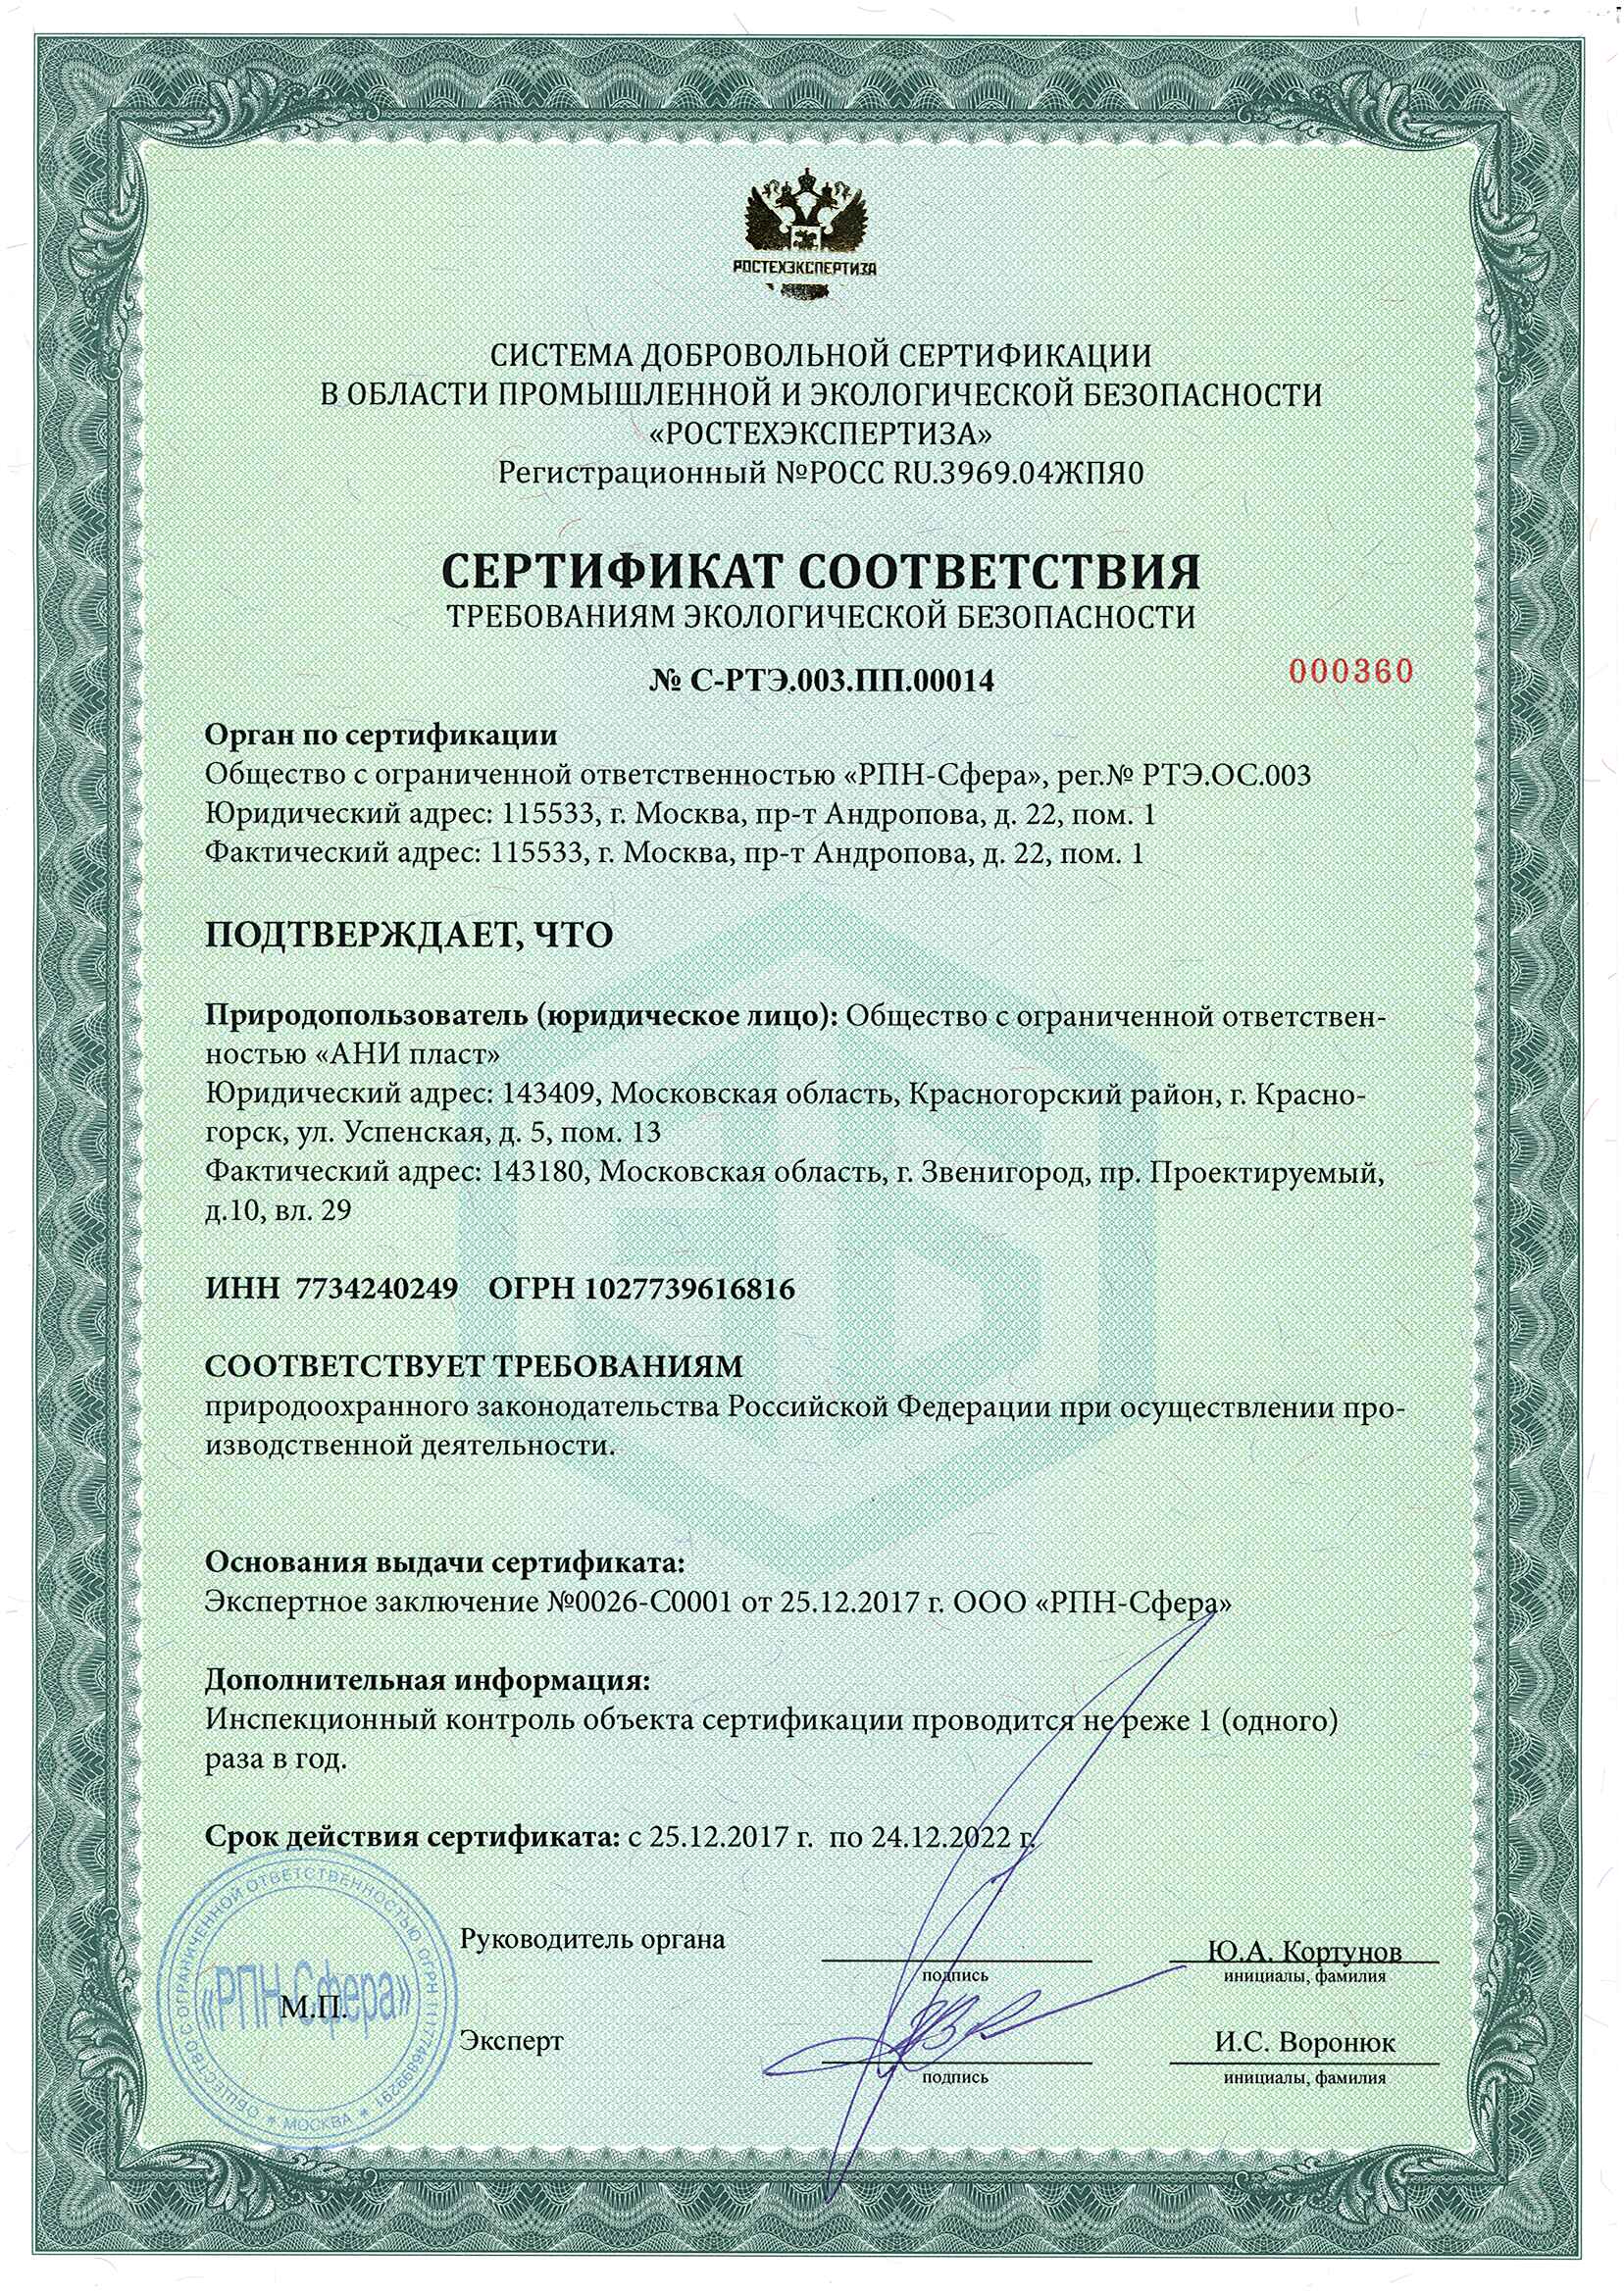 Сертификат соответствия требованиям экологической безопасности по 24.12.22.jpg